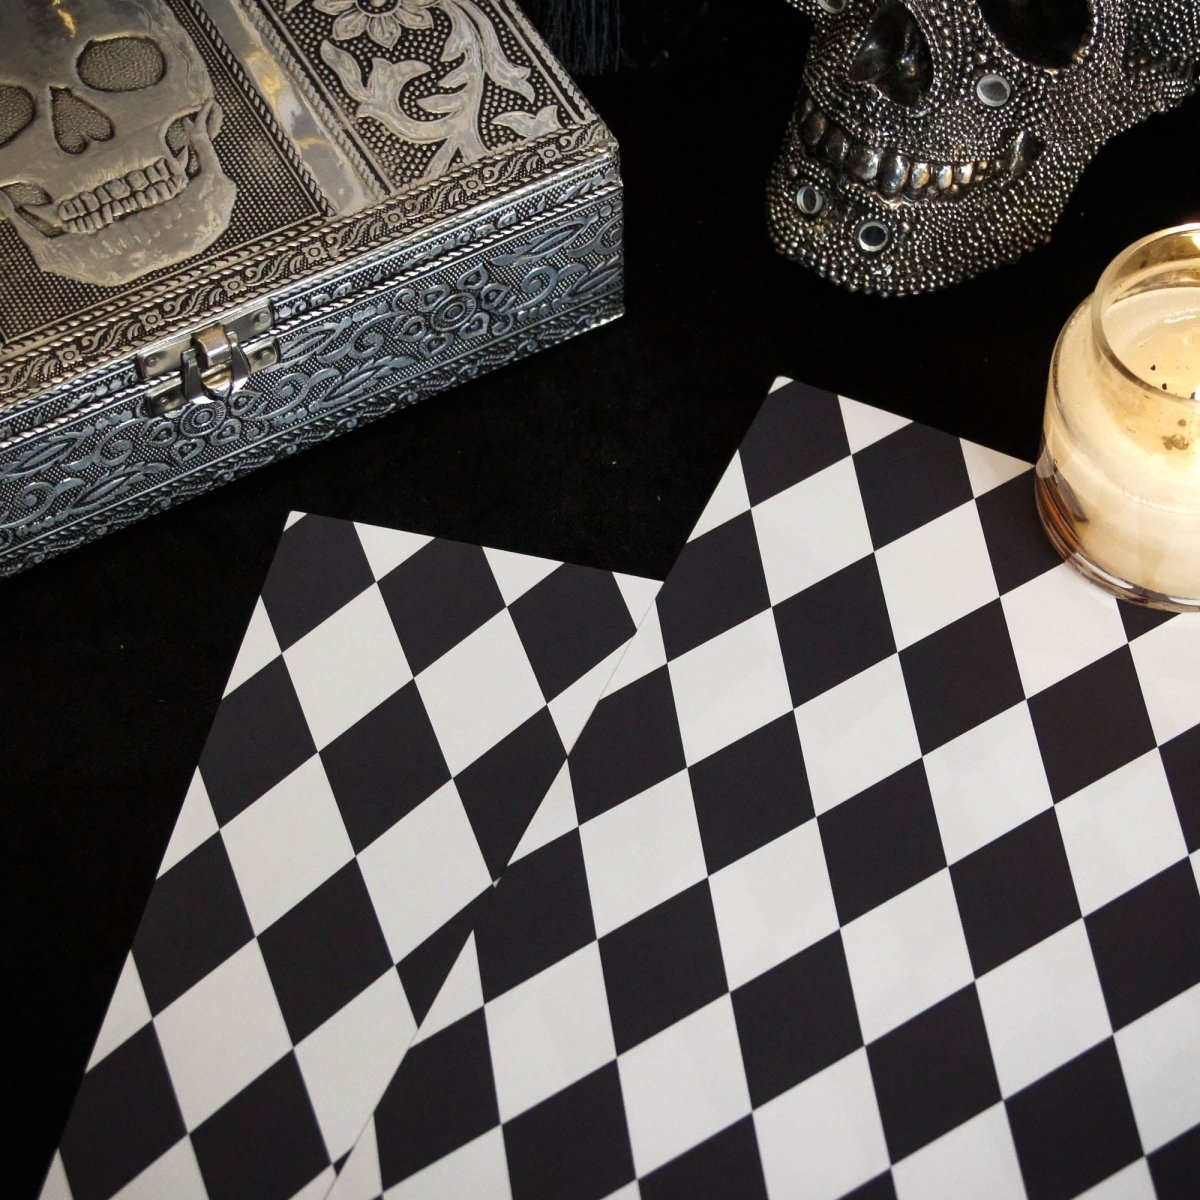 Black And White Diamond Check - Gothic Gift Wrap - Black And White Diamond Wrapping Paper - Gift Wrap